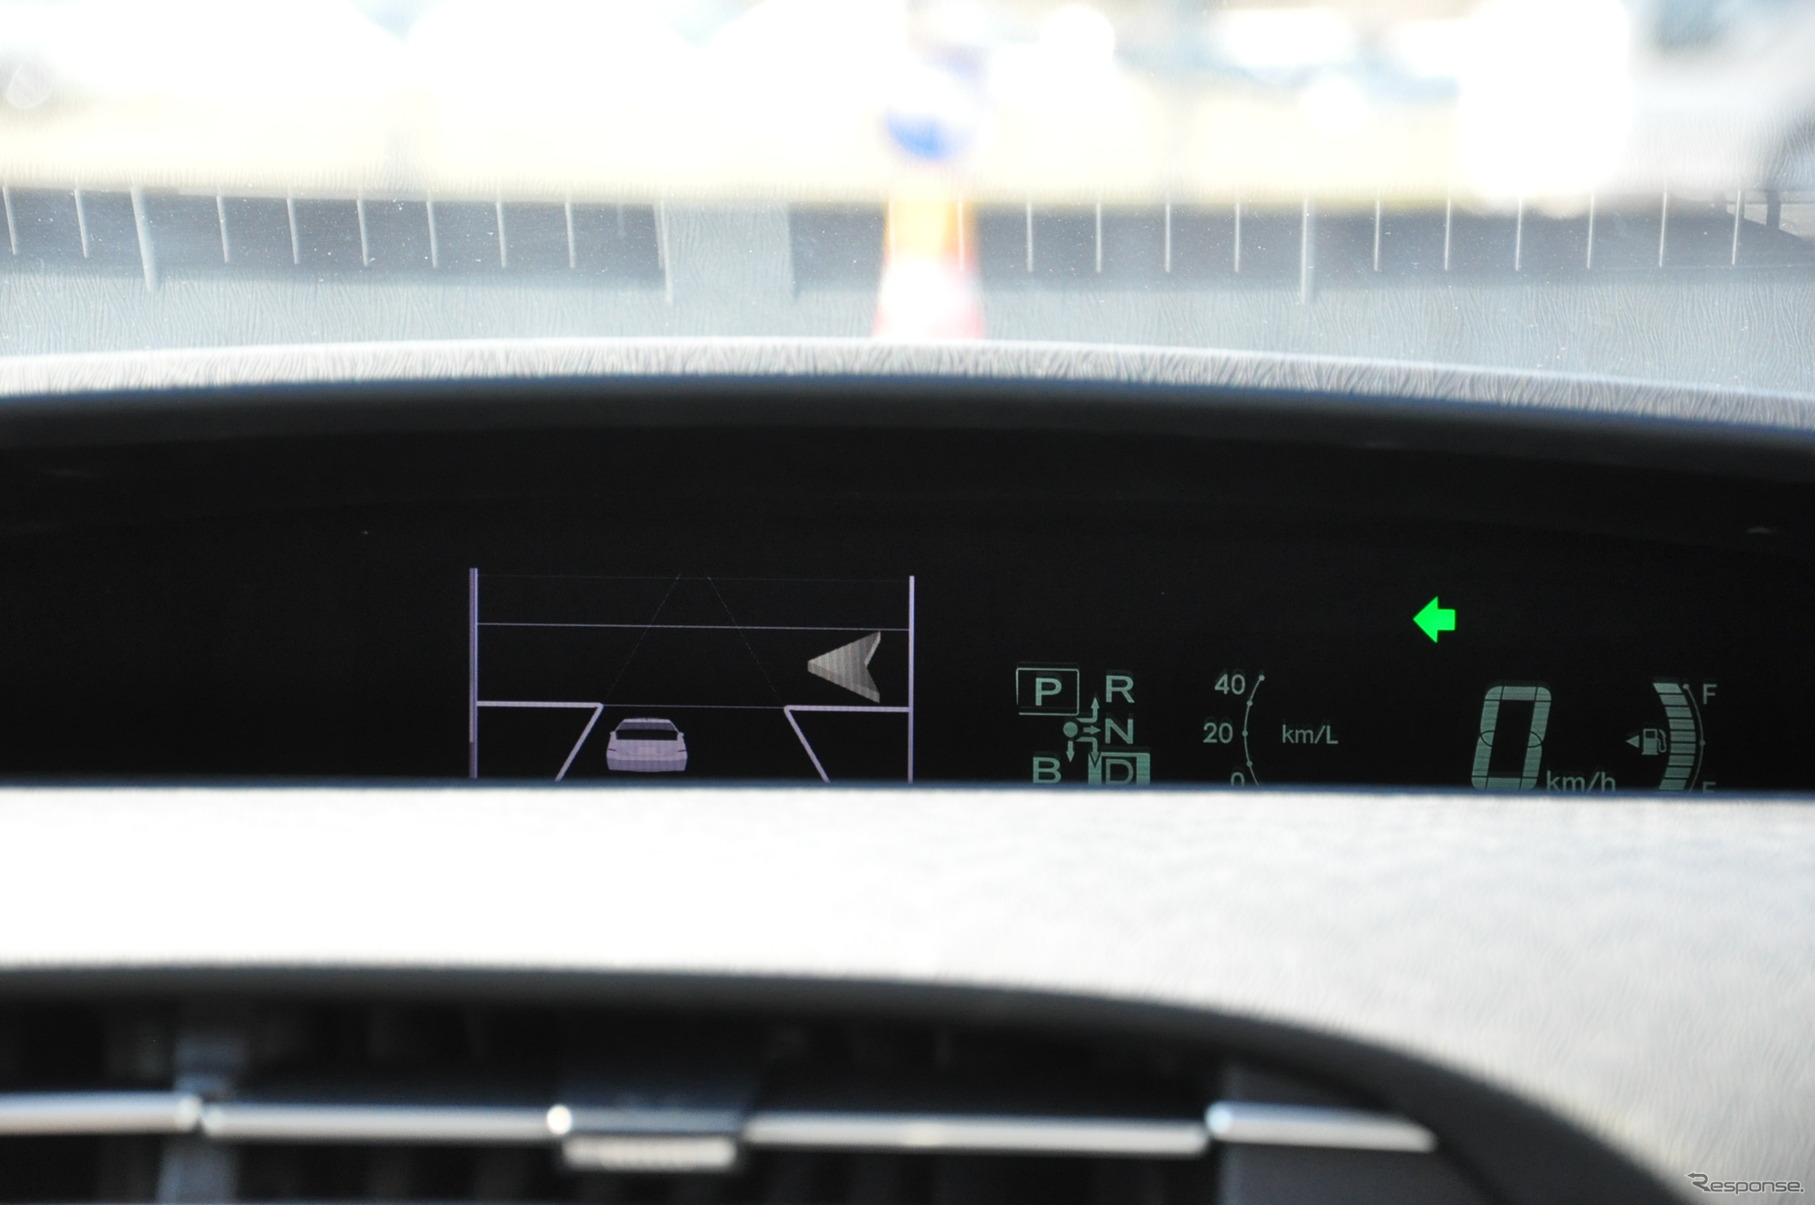 インストルメントパネルにある速度表示の隣に、車両周辺の交通環境が表示された。他車両検知のようす